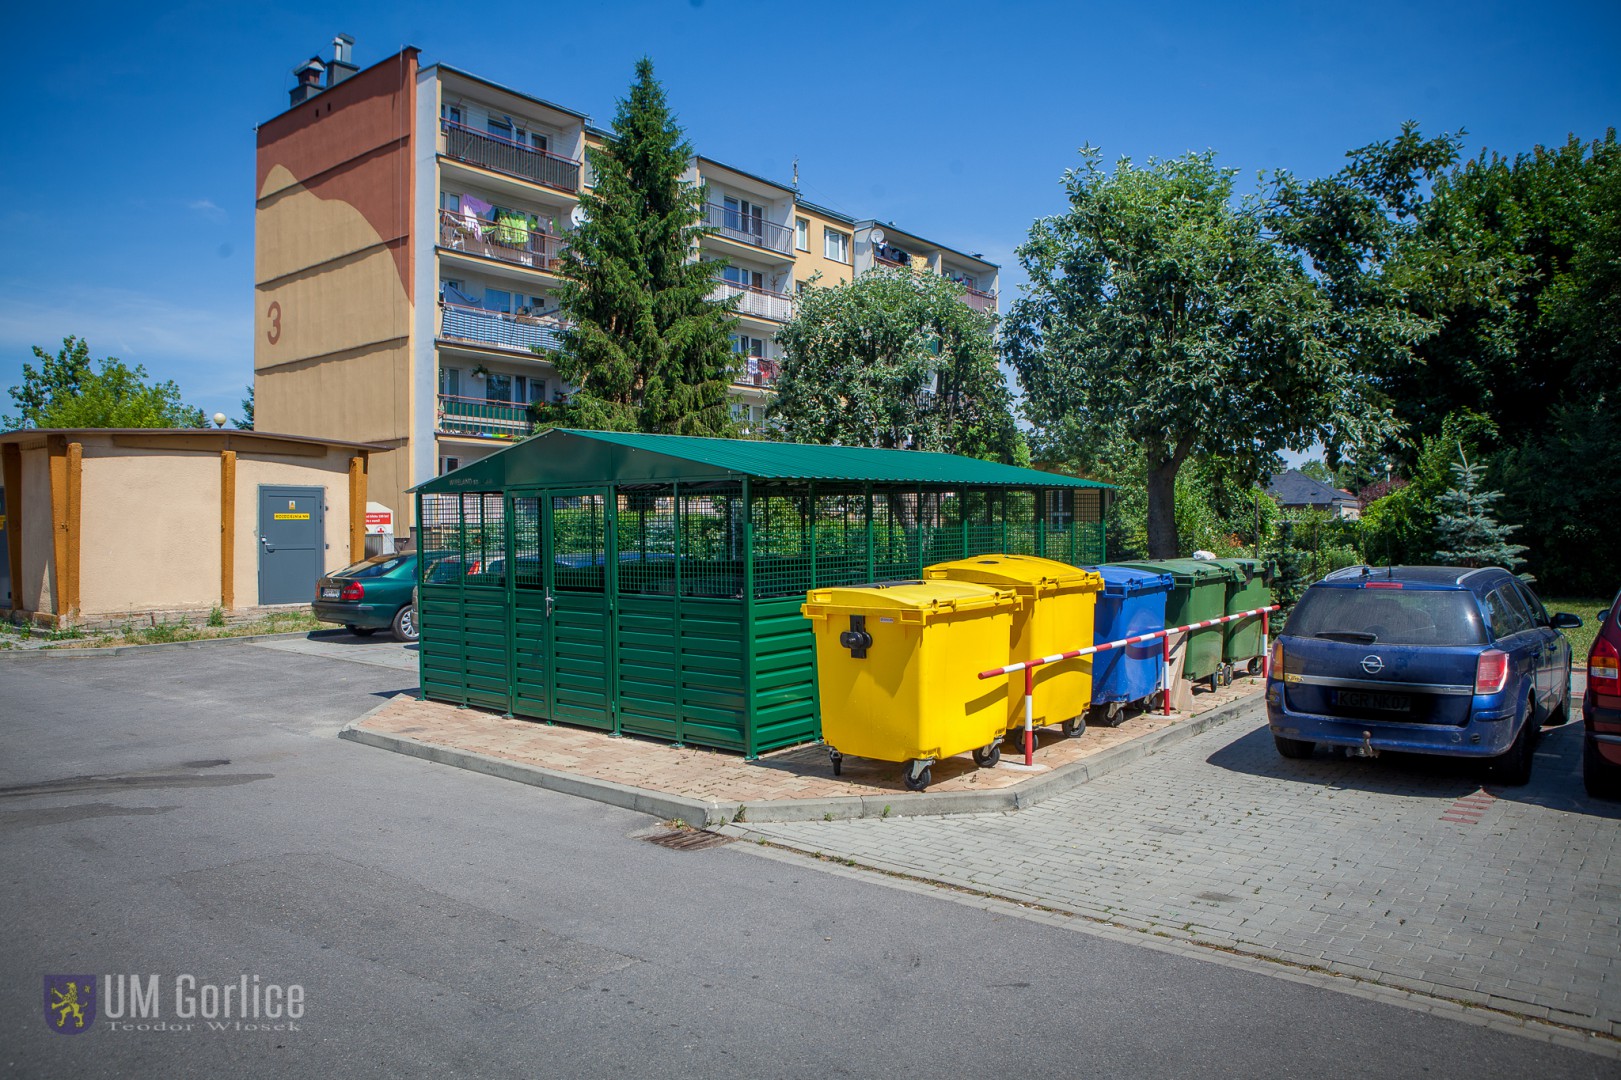 Zdjęcie do projektu Organizacja osiedlowego "Gniazda gromadzenia segregowanych odpadów komunalnych", poprawa warunków sanitarnych i estetyki osiedla